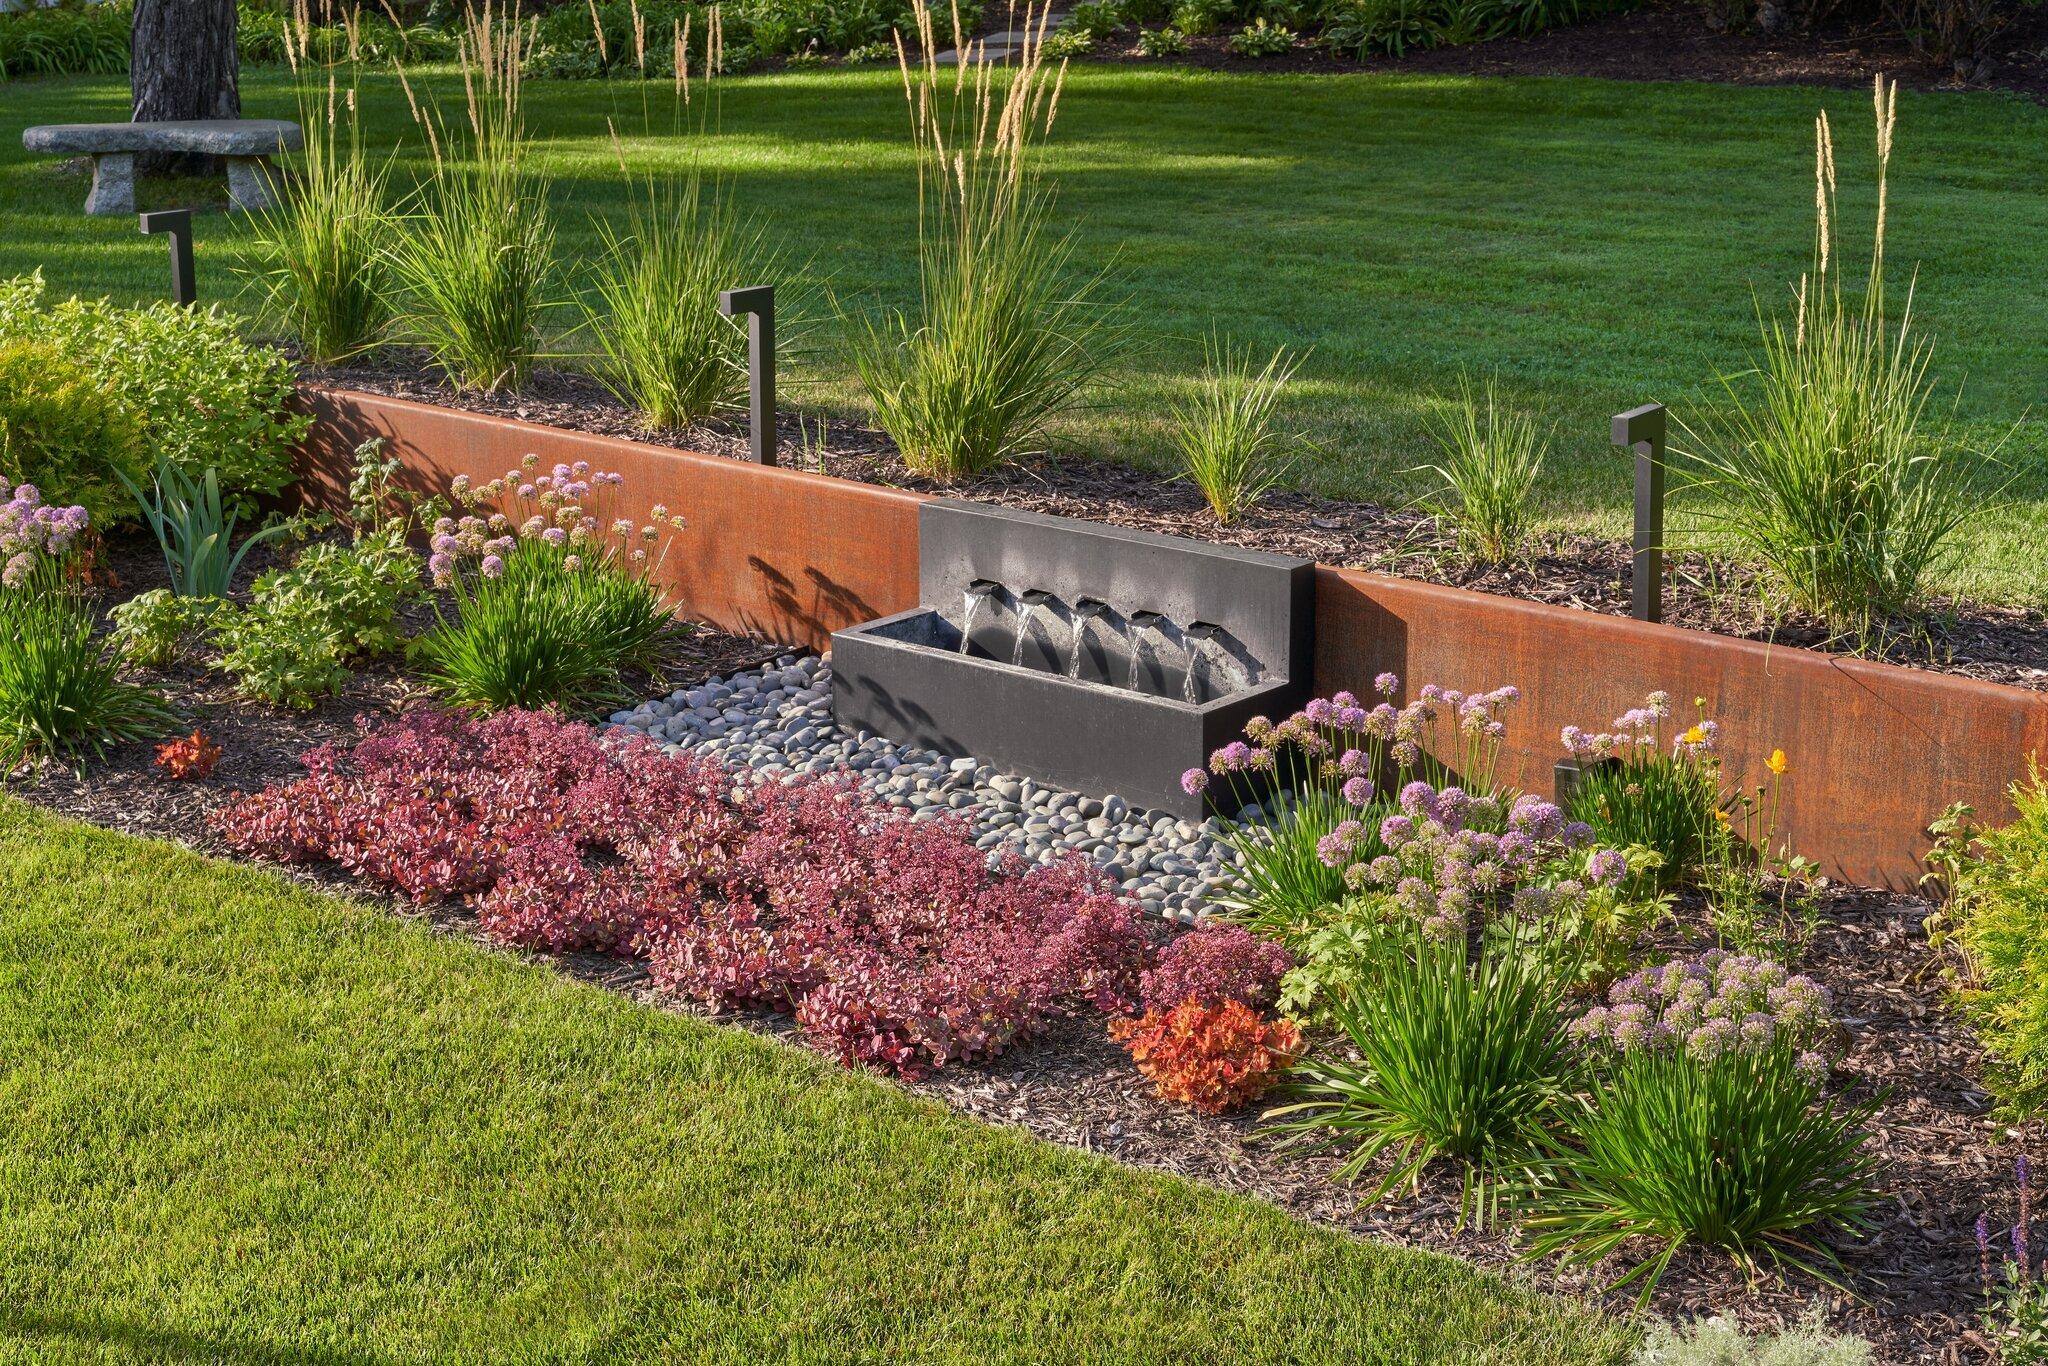 corten steel walls and modern water feature in garden bed